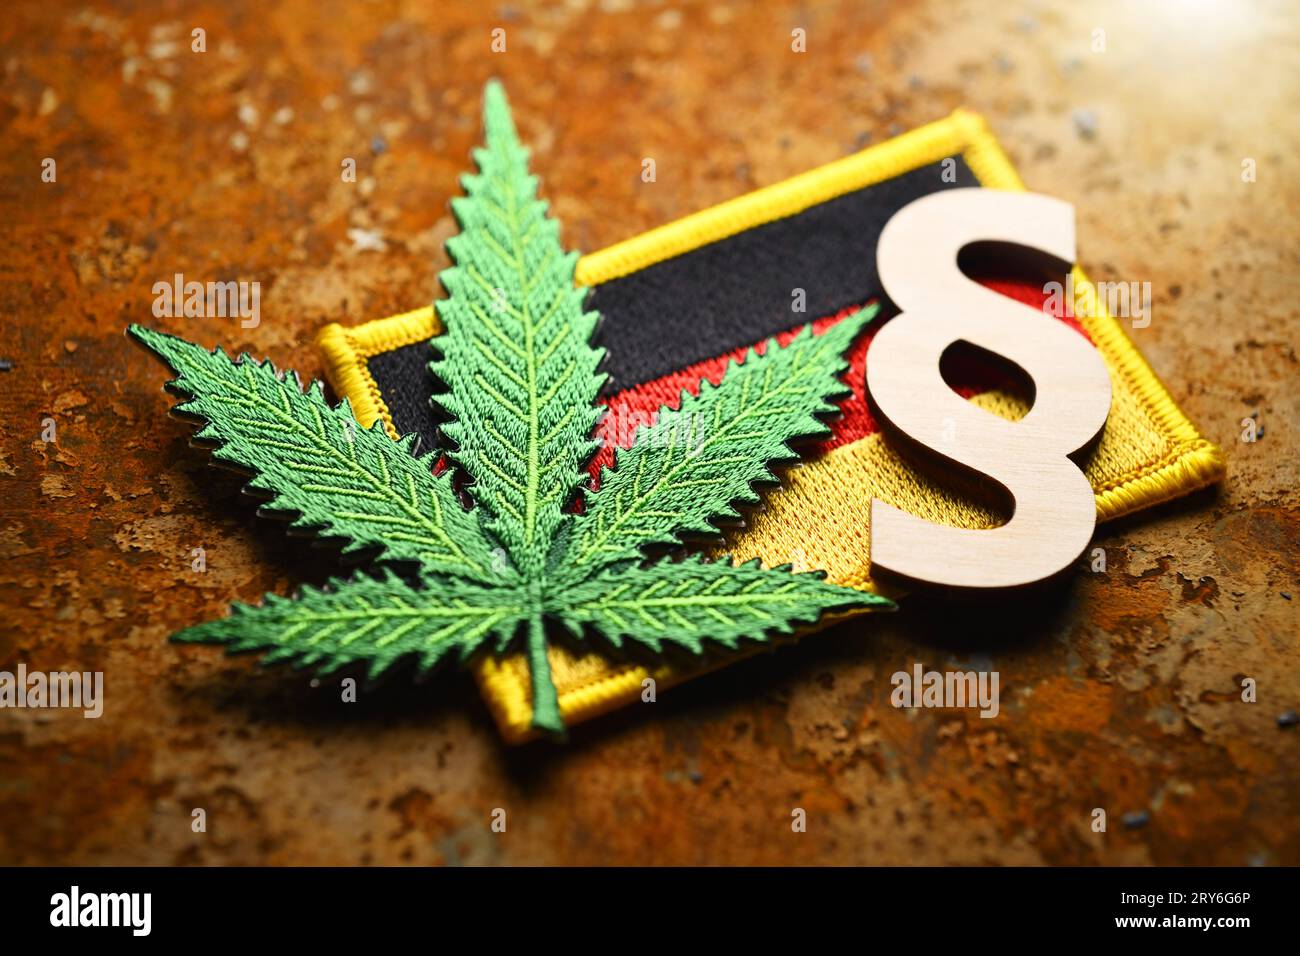 Cannabisblatt-Symbol und Paragrafenzeichen auf Deutschlandfahne, Cannabisgesetz *** simbolo della foglia di Cannabis e segno di paragrafo sulla bandiera tedesca, legge sulla cannabis Foto Stock